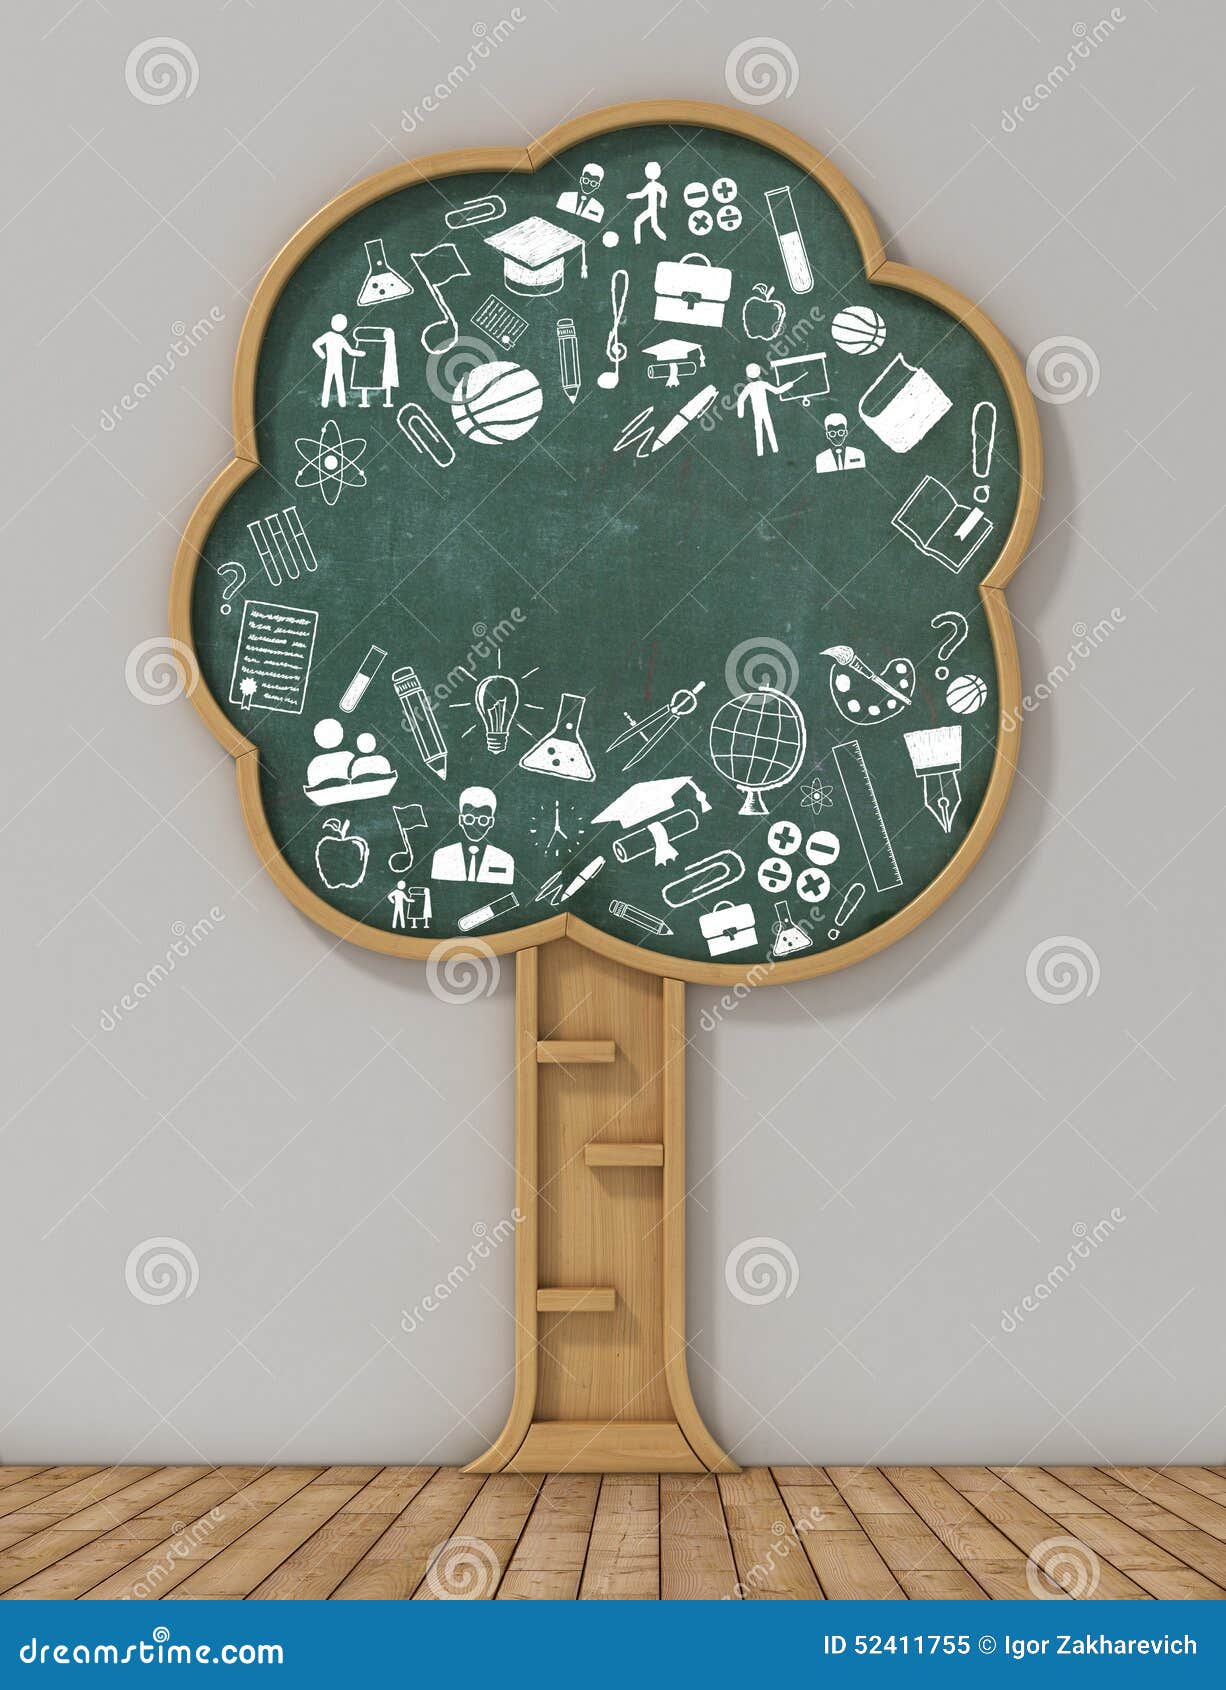 Buchregal in der Form des Baum- und Zeichnungskonzeptes Studienkonzept